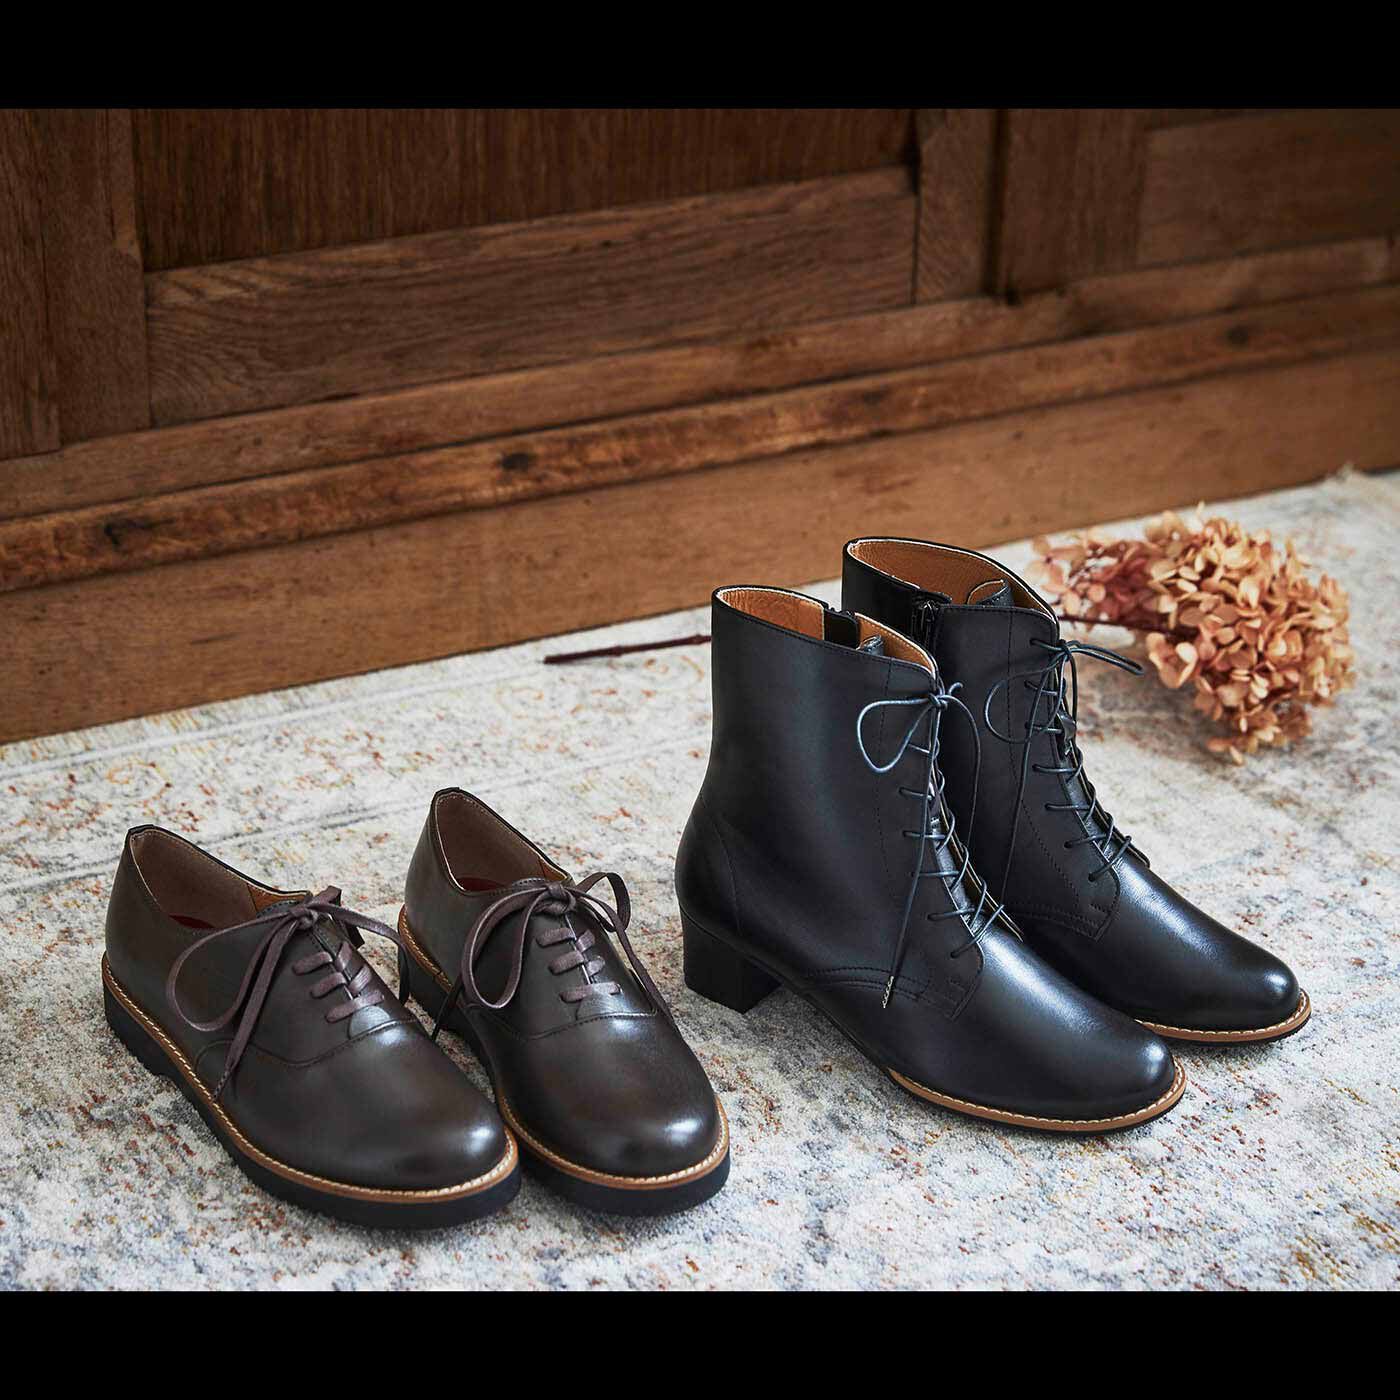 ＆Stories|長田の靴職人が作った 職人本革のポストマンシューズ〈ダークブラウン〉|長田の職人メイドのブーツたち。足を入れた瞬間にわかるその心地よさを、ぜひ体感してください。